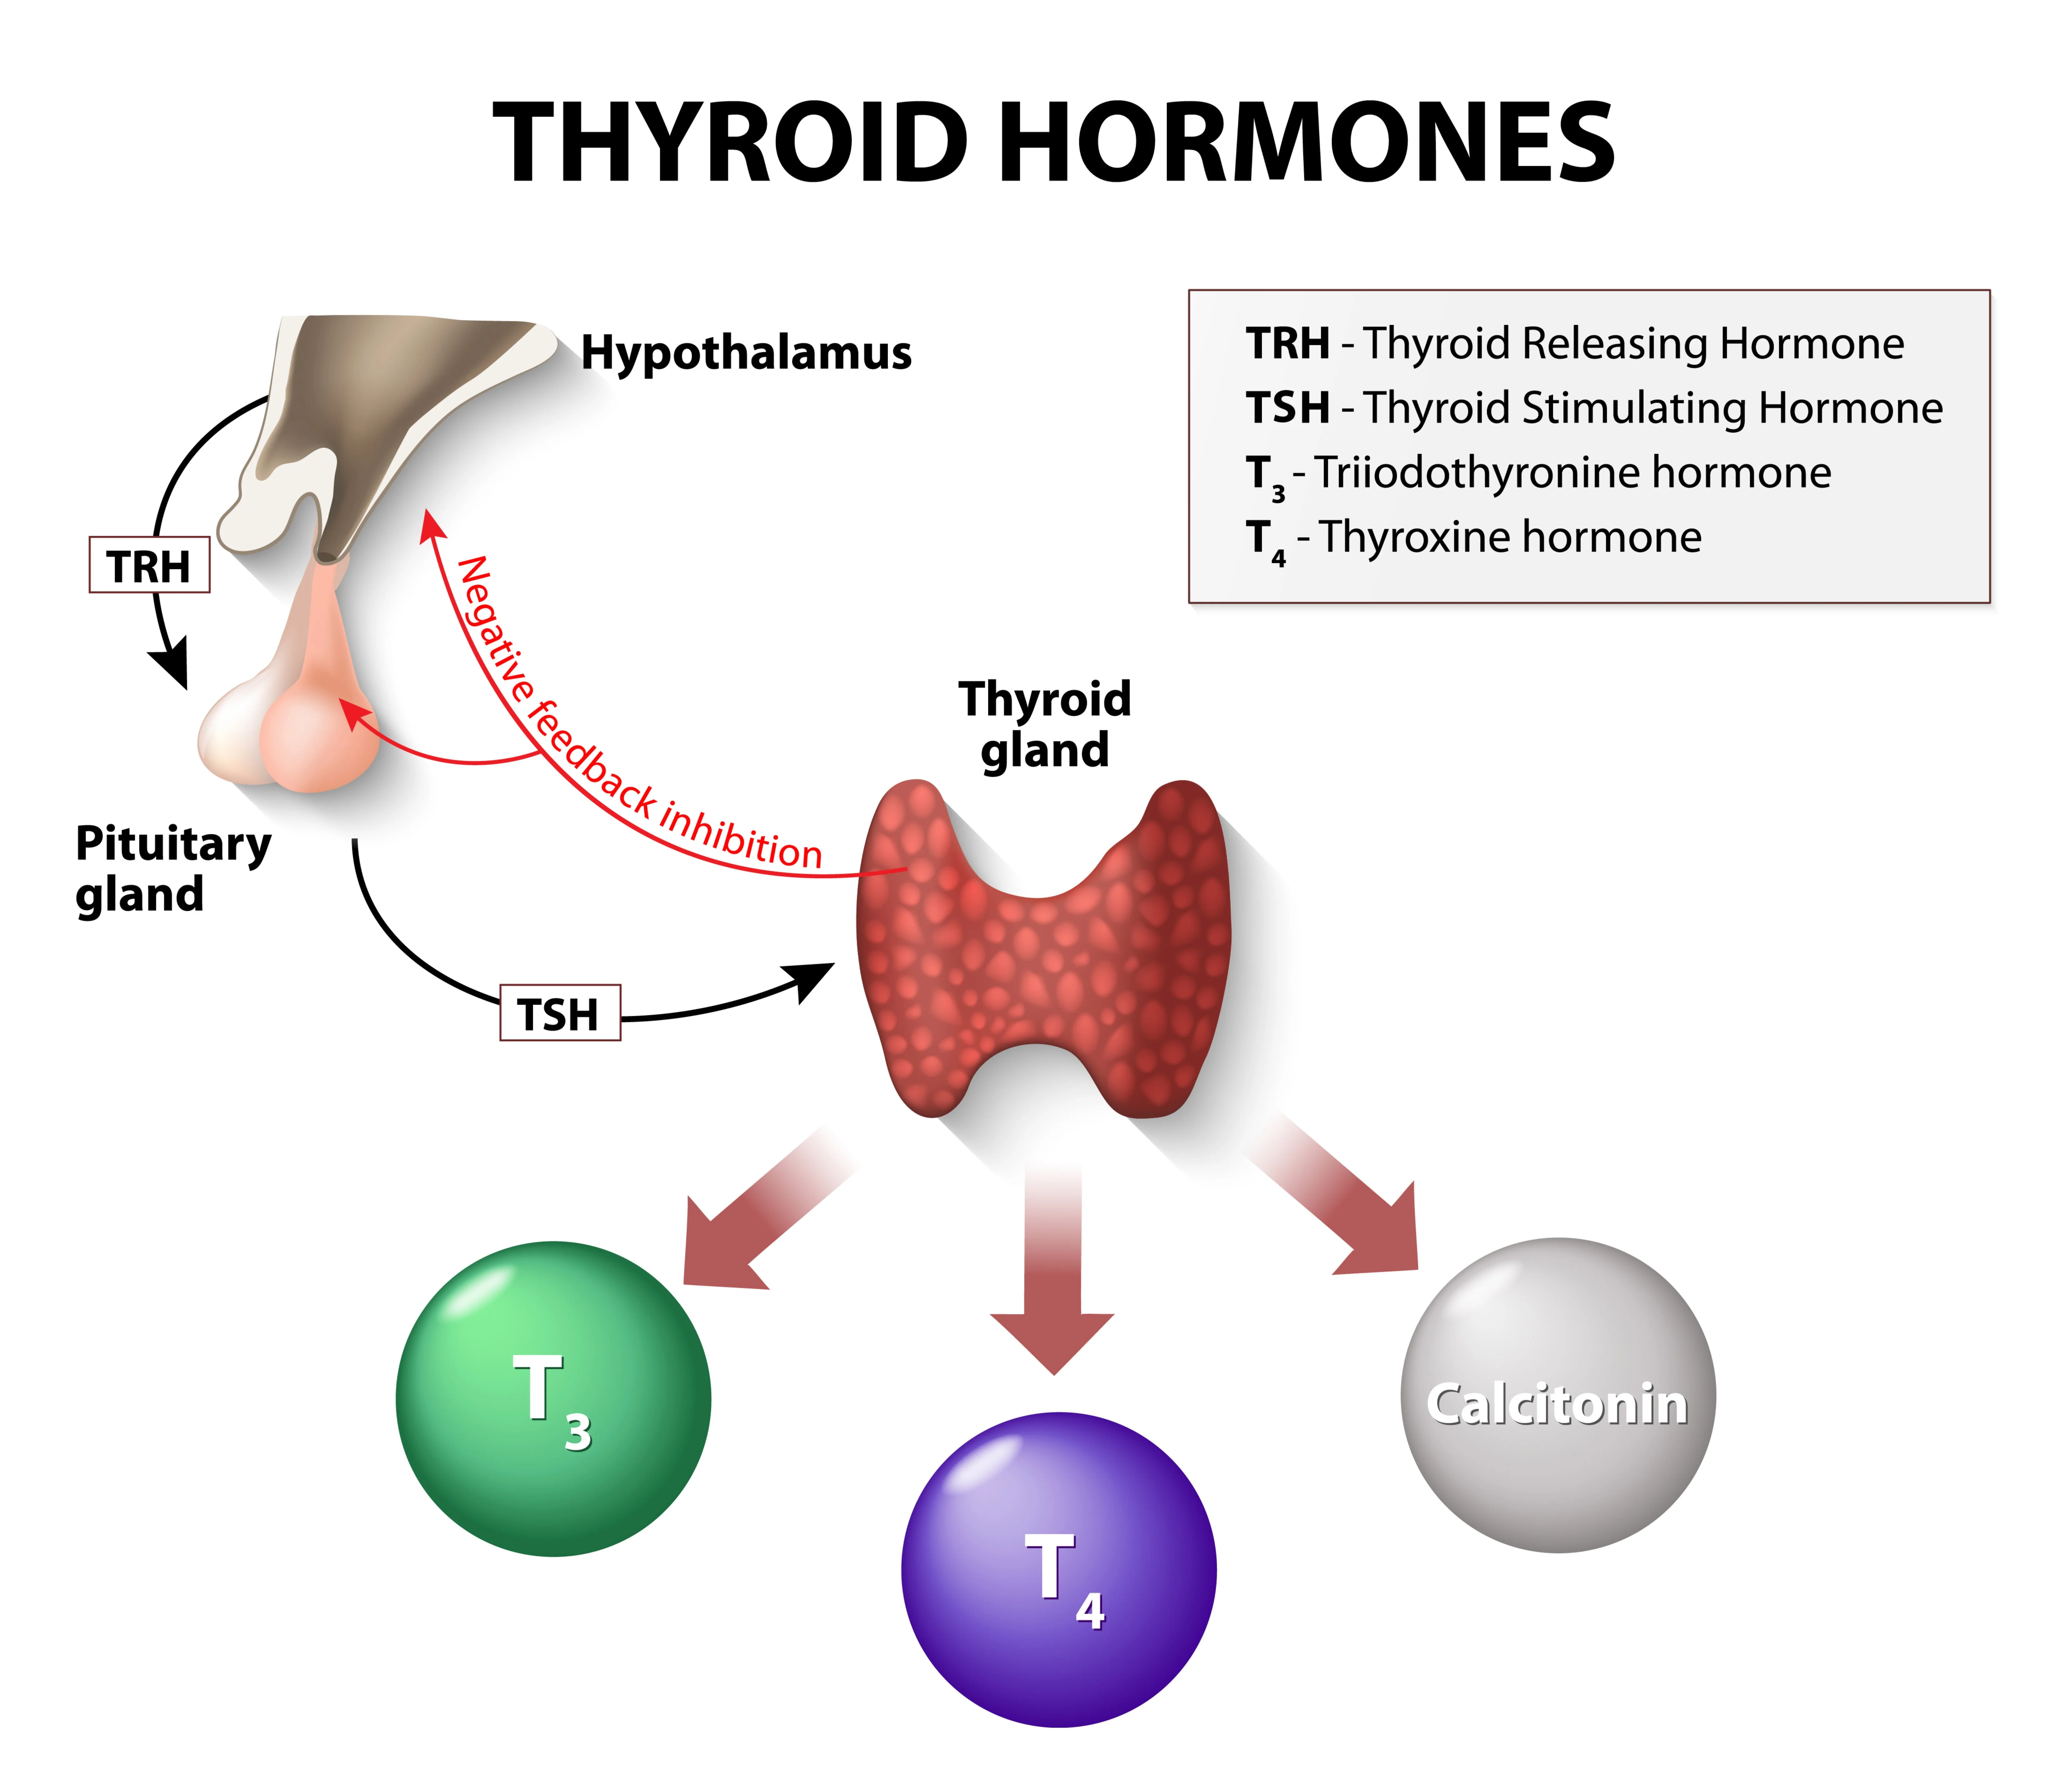 La glándula tiroidea es un órgano con forma de mariposa situado delante del cuello que secreta dos tipos de hormonas: triyodotironina (T3) y tiroxina (T4). Estas hormonas regulan el metabolismo del cuerpo, que transforma los alimentos en energía. La glándula tiroidea está controlada por la hormona estimulante del tiroides (TSH) que produce la hipófisis en el cerebro.